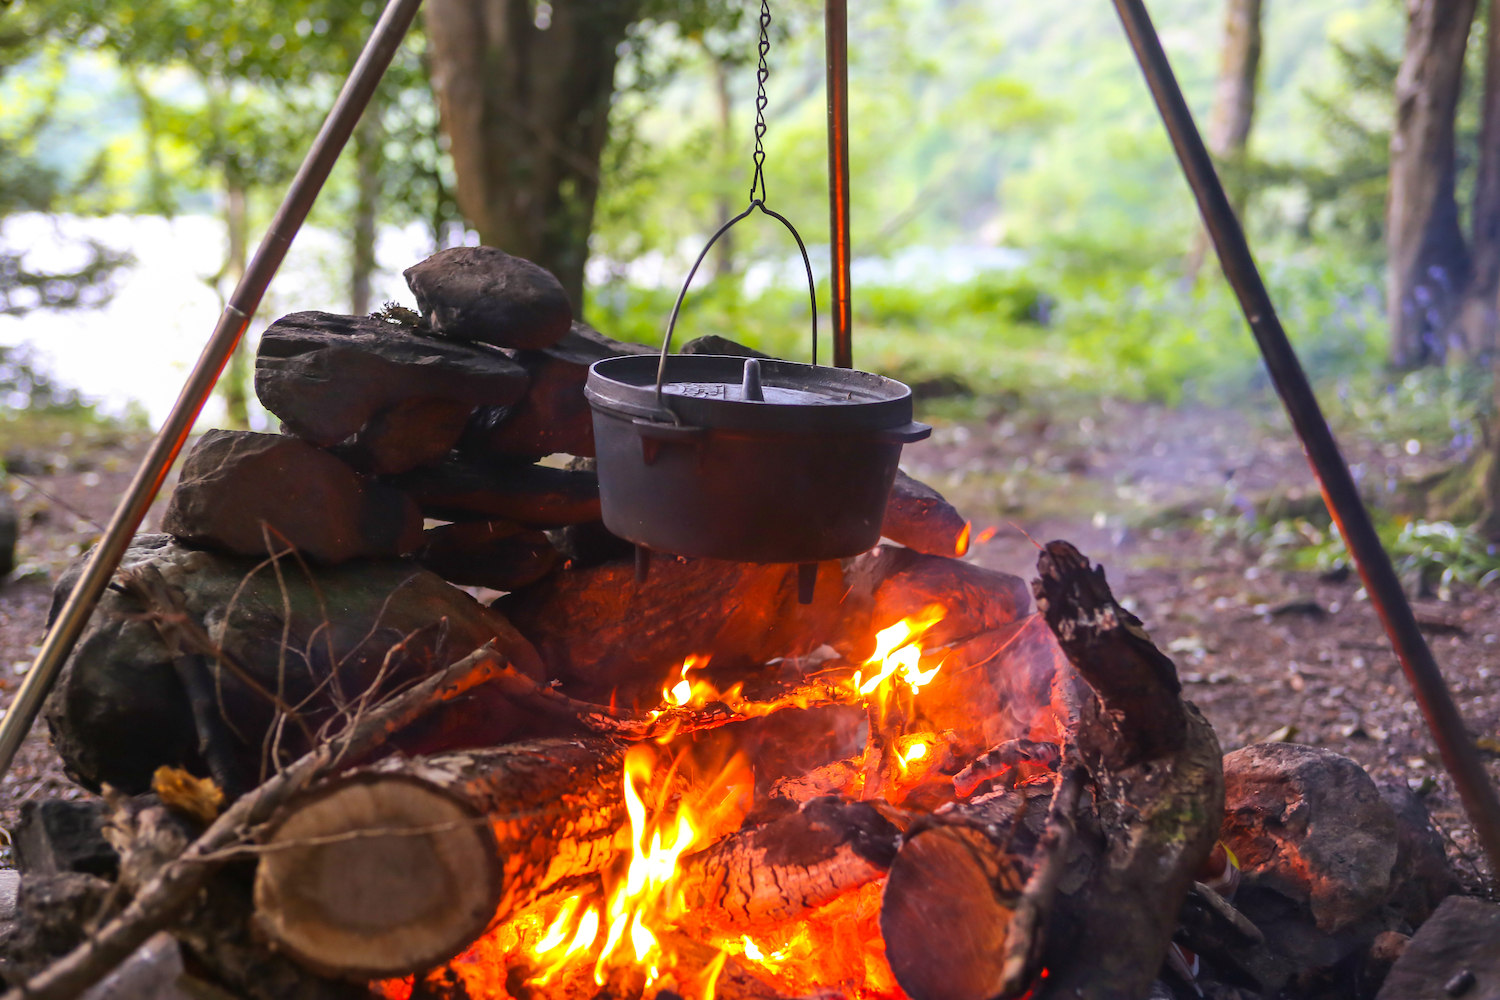 Cast Iron Stew Pot Dutch Oven Pot Open Fire Campfire Outdoor Camping Cooking New 